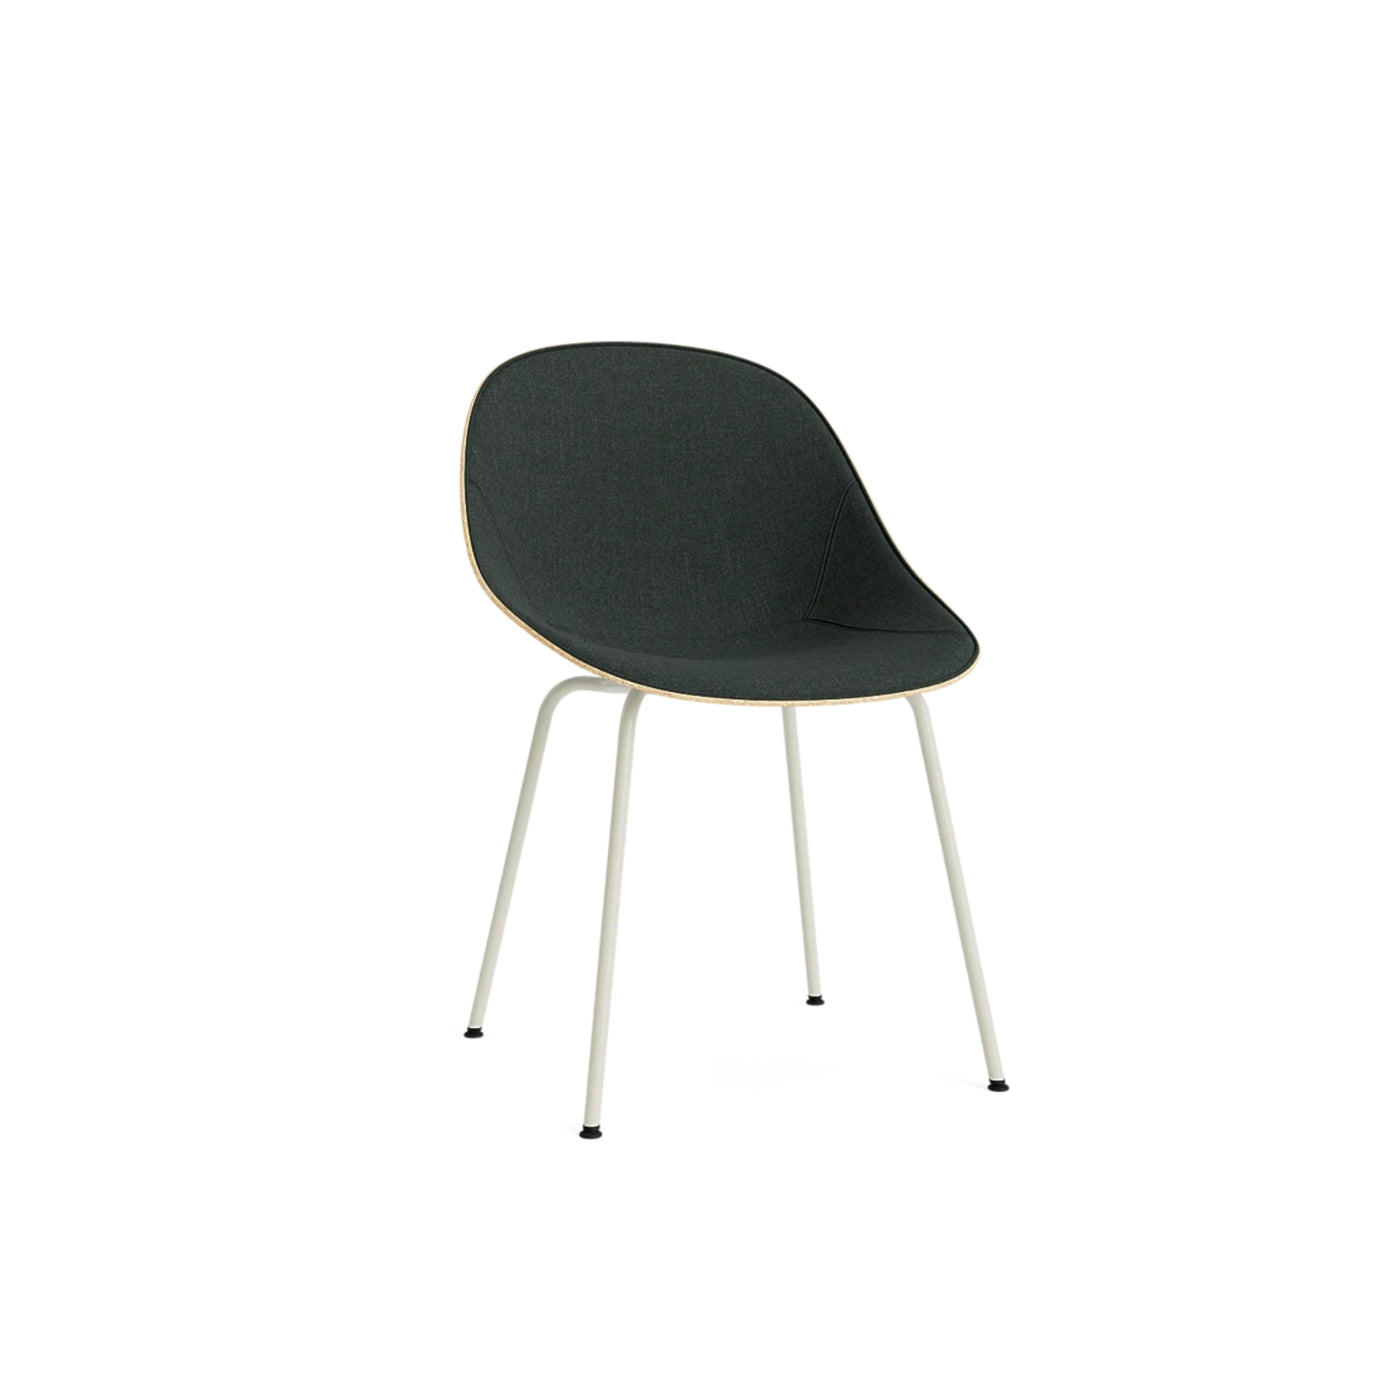 Normann Copenhagen Mat Chair at someday designs. #colour_remix-973